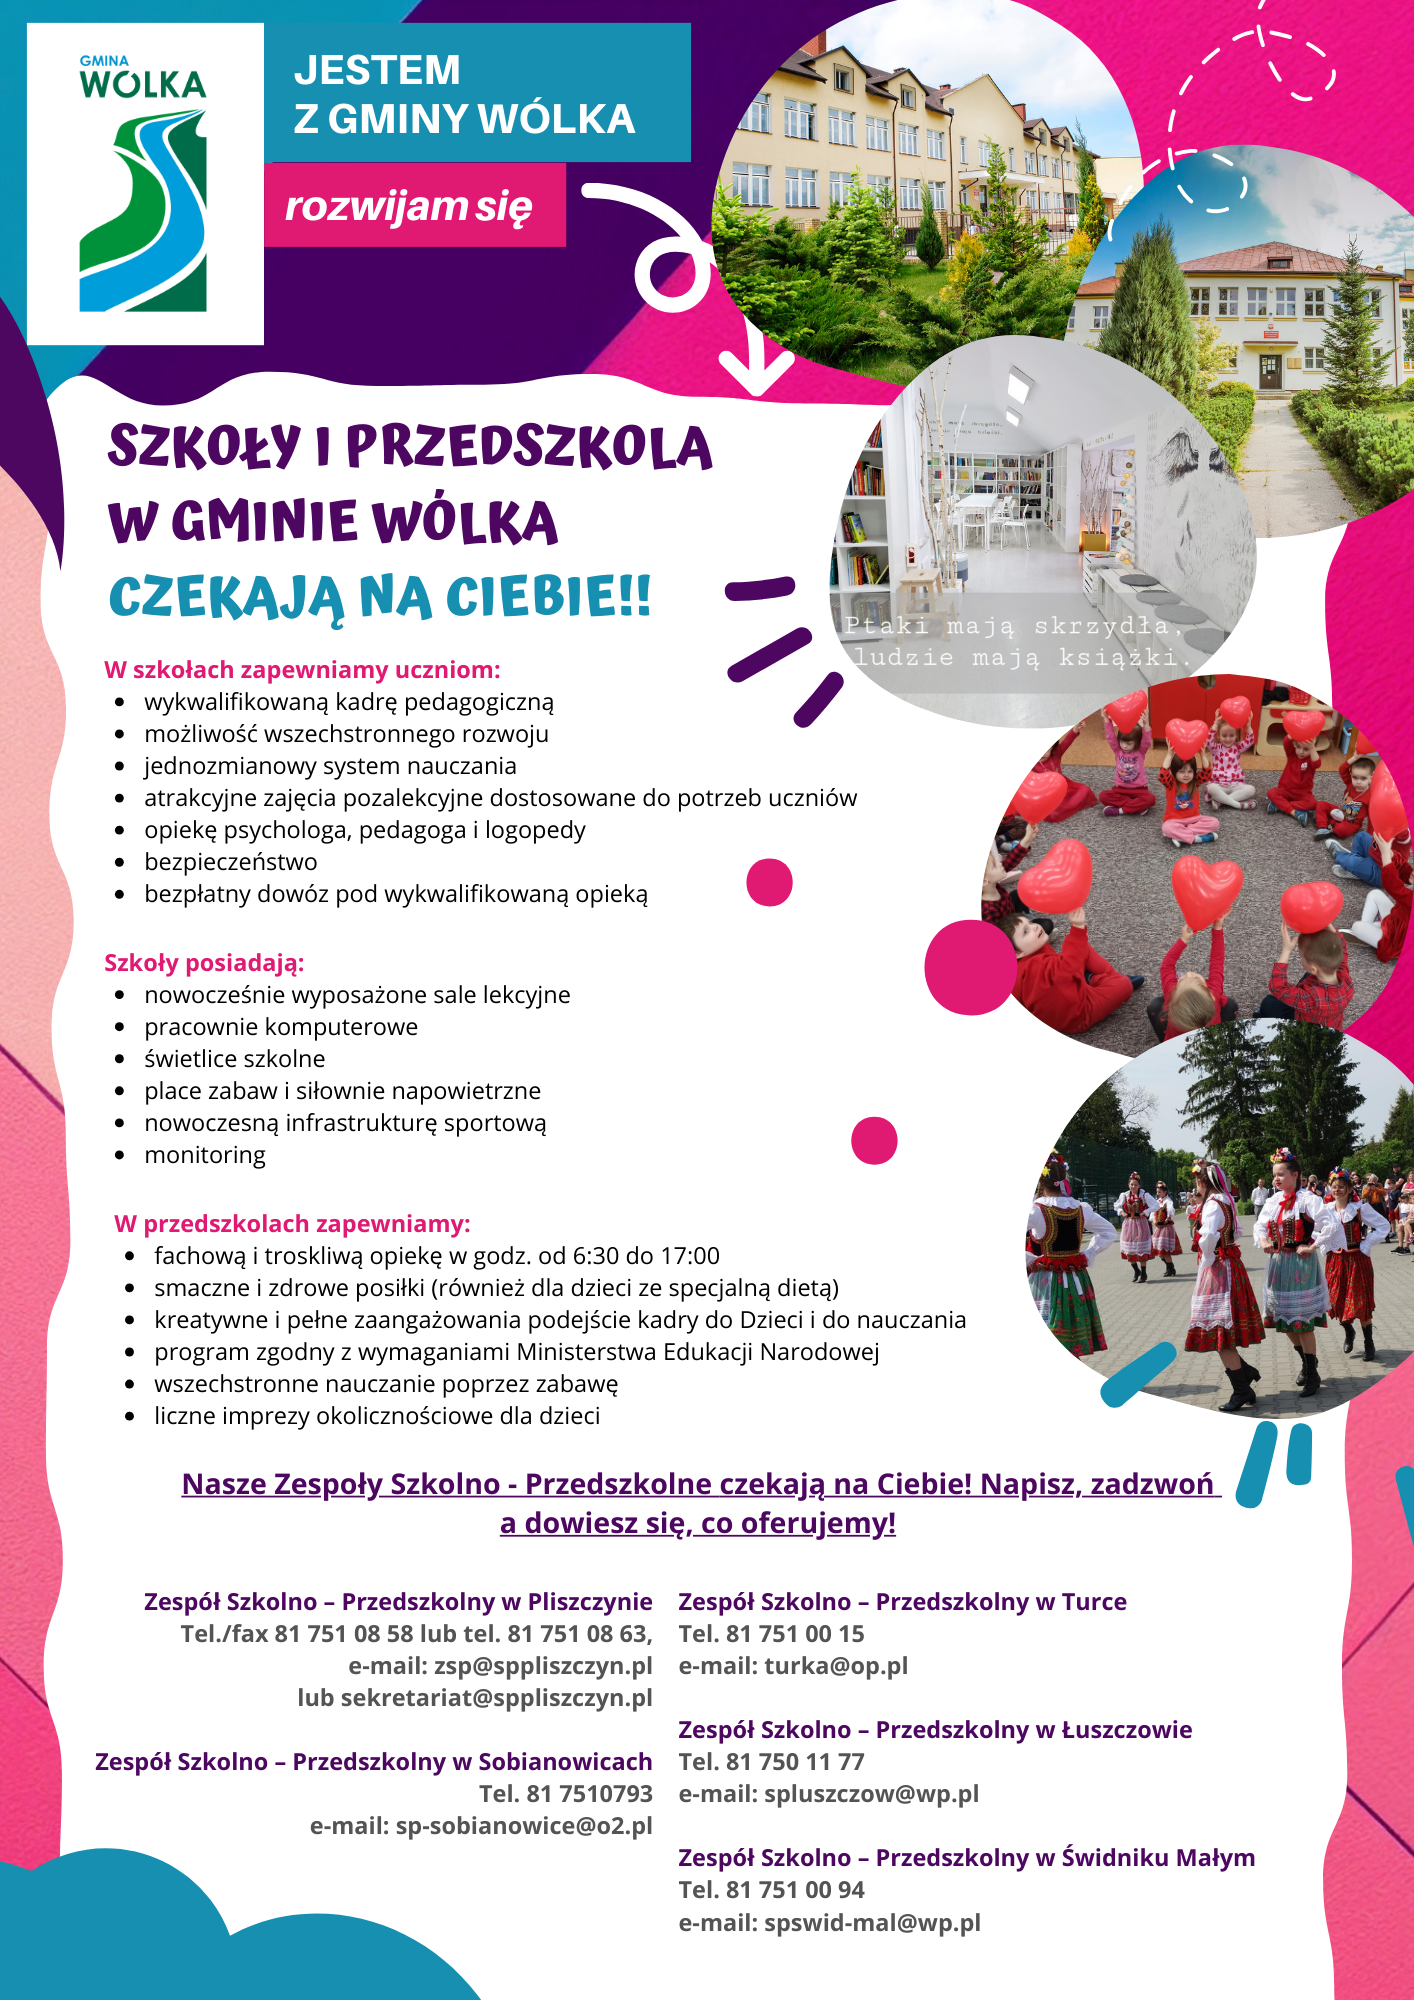 Plakat promocyjny szkoły przedszkolnej w Wólce, z różowymi i białymi akcentami, zdjęciami budynków i dzieci, oraz informacjami kontaktowymi i logo szkoły.